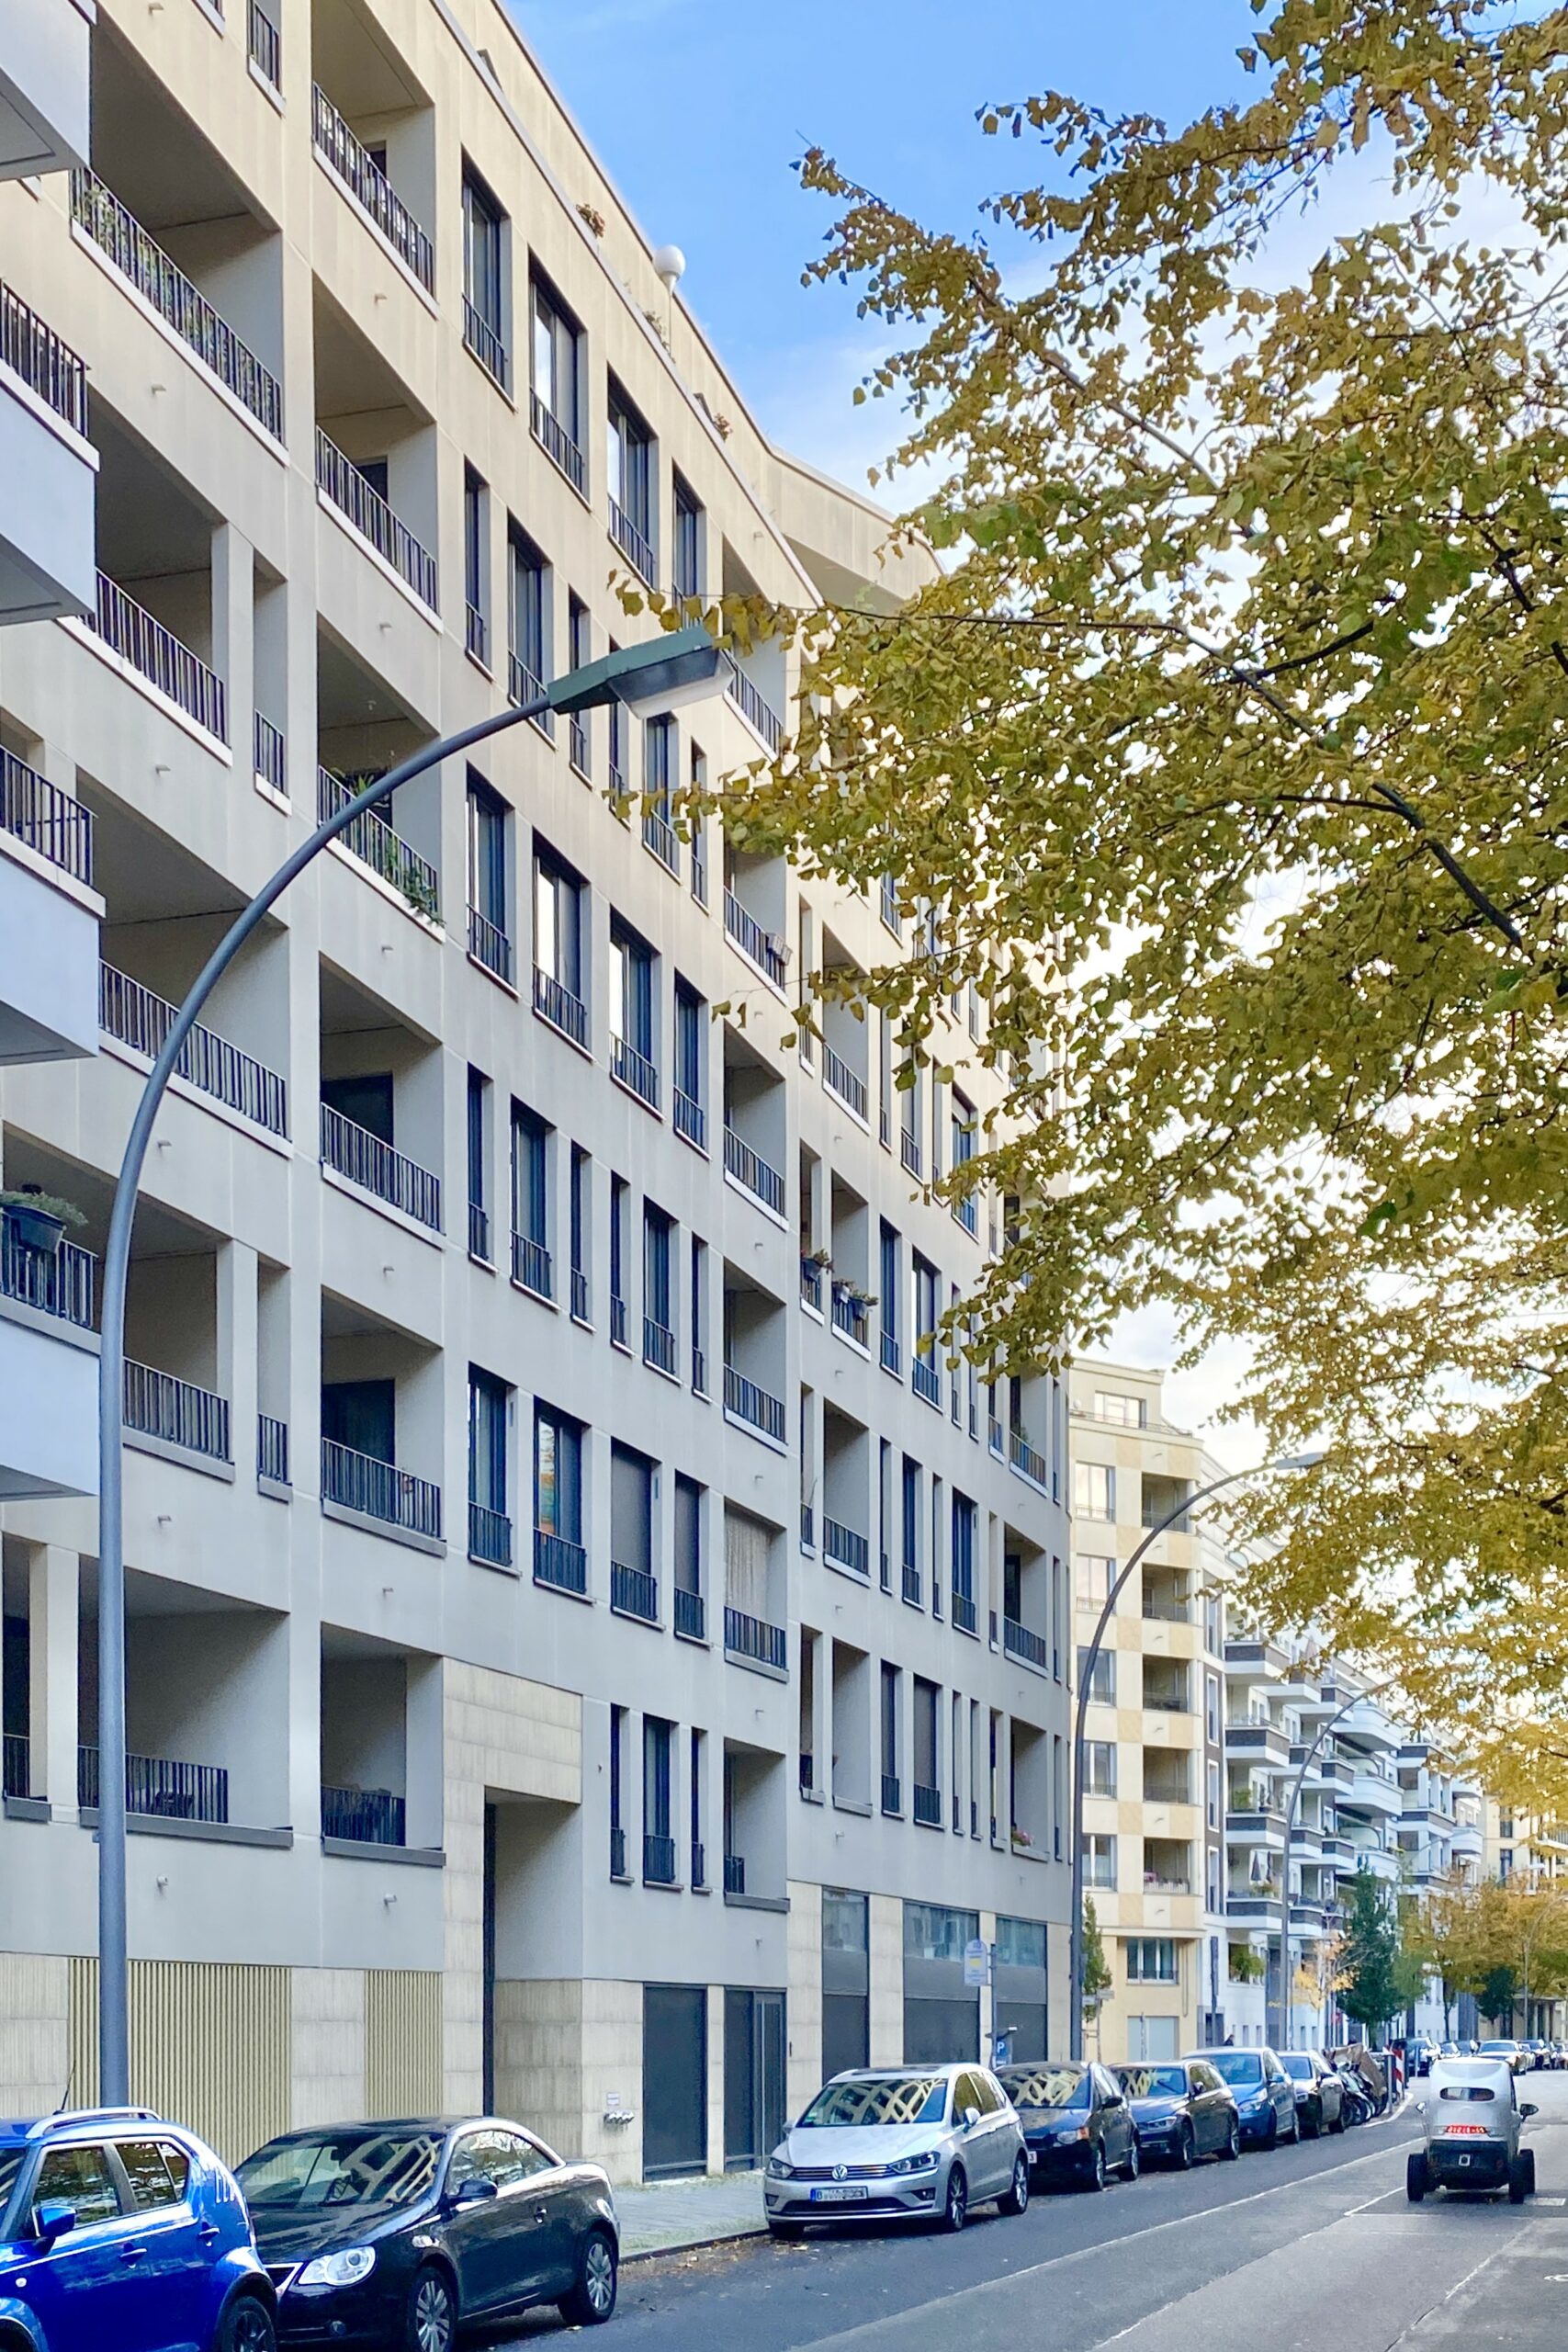 Wohnungsmieten stiegen 2023 flächendeckend – am stärksten in Berlin